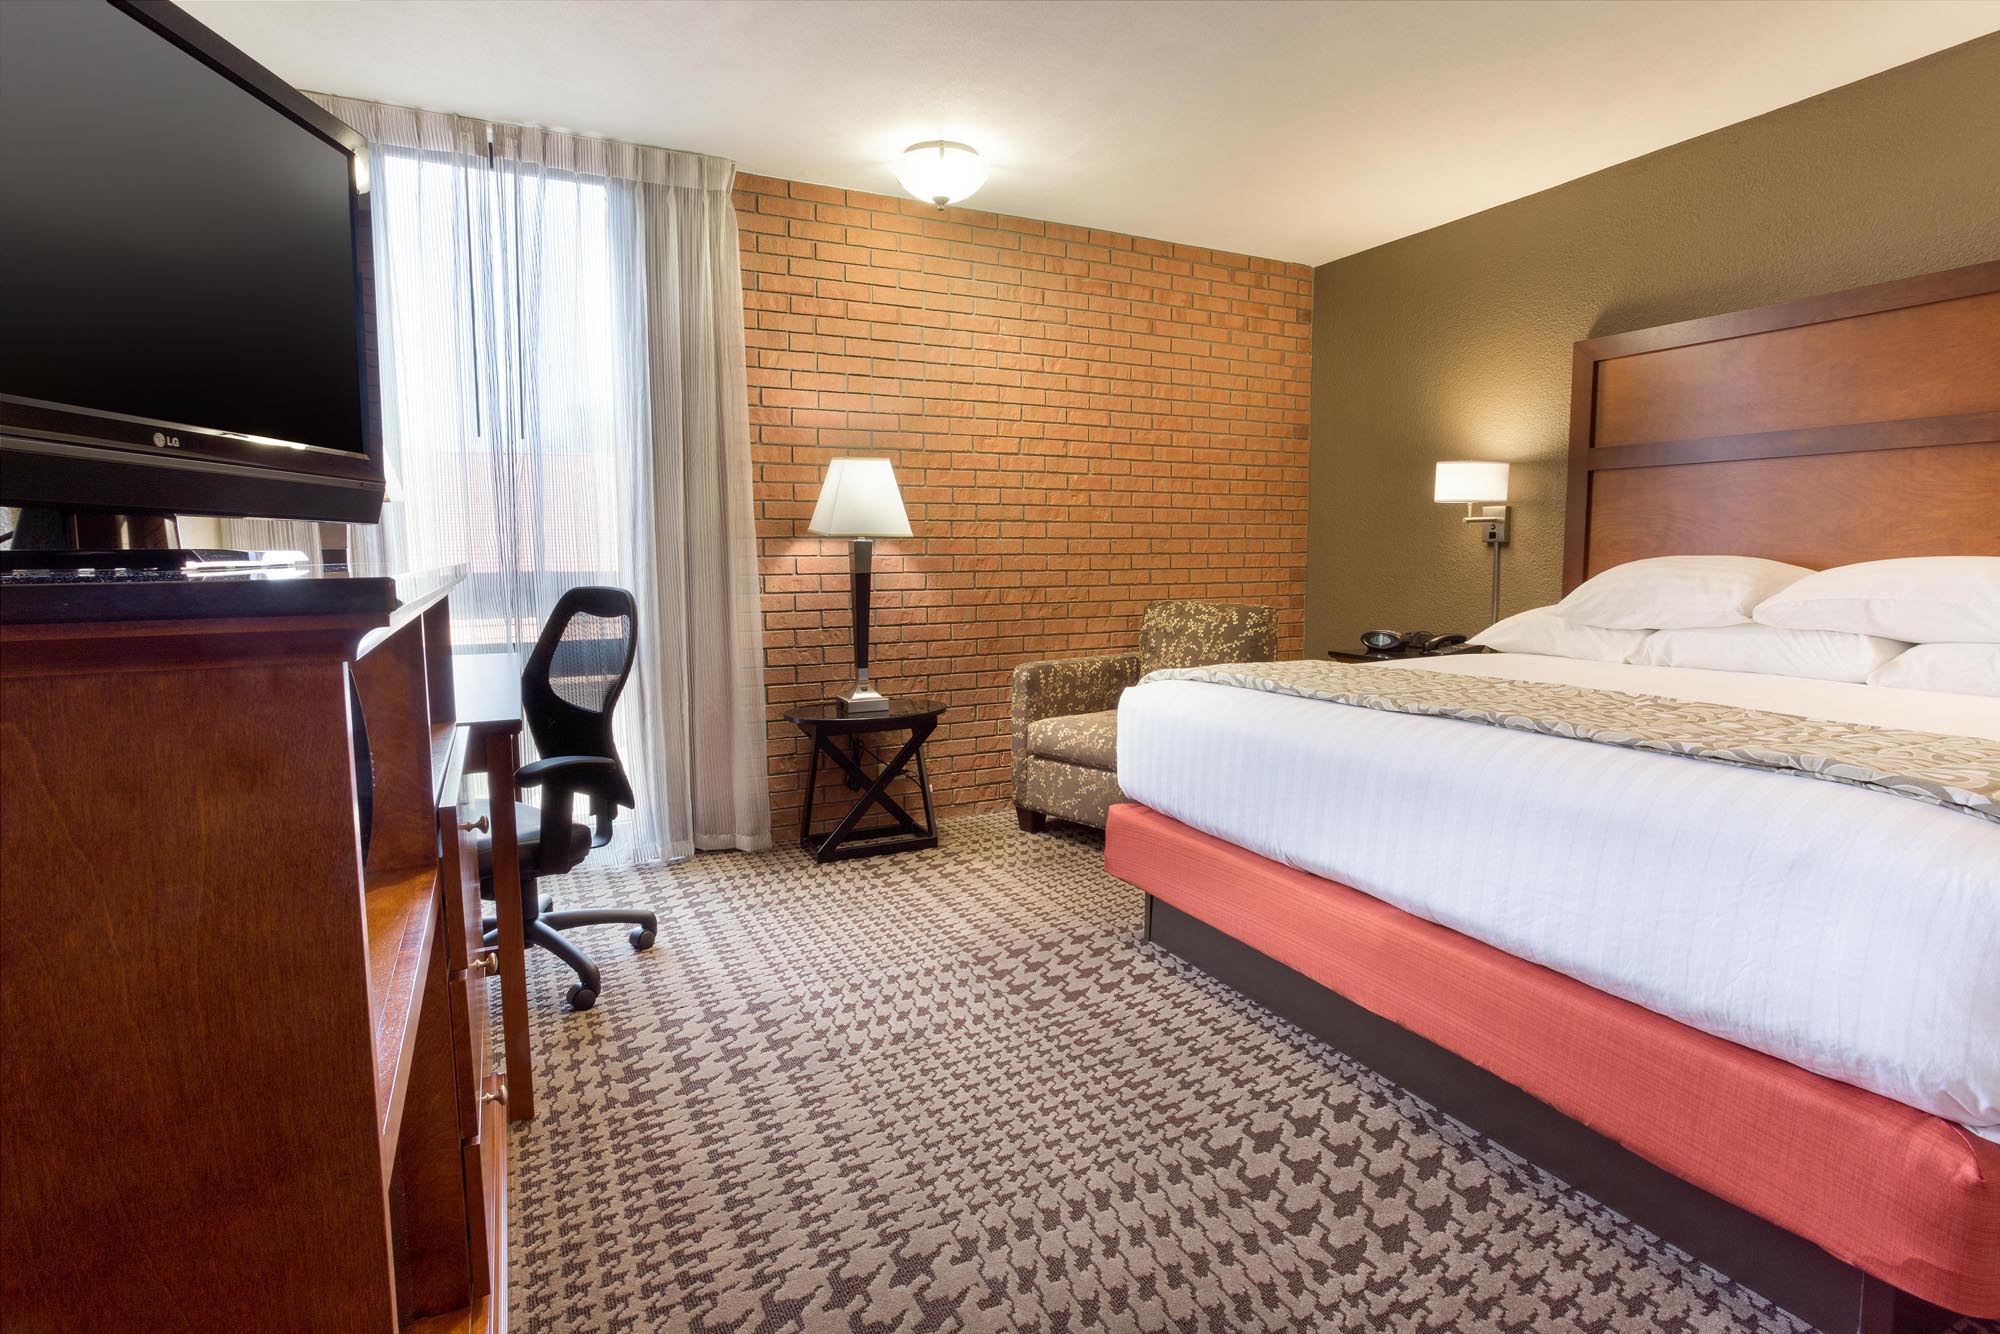 Drury Inn & Suites Jackson Ridgeland - Drury Hotels